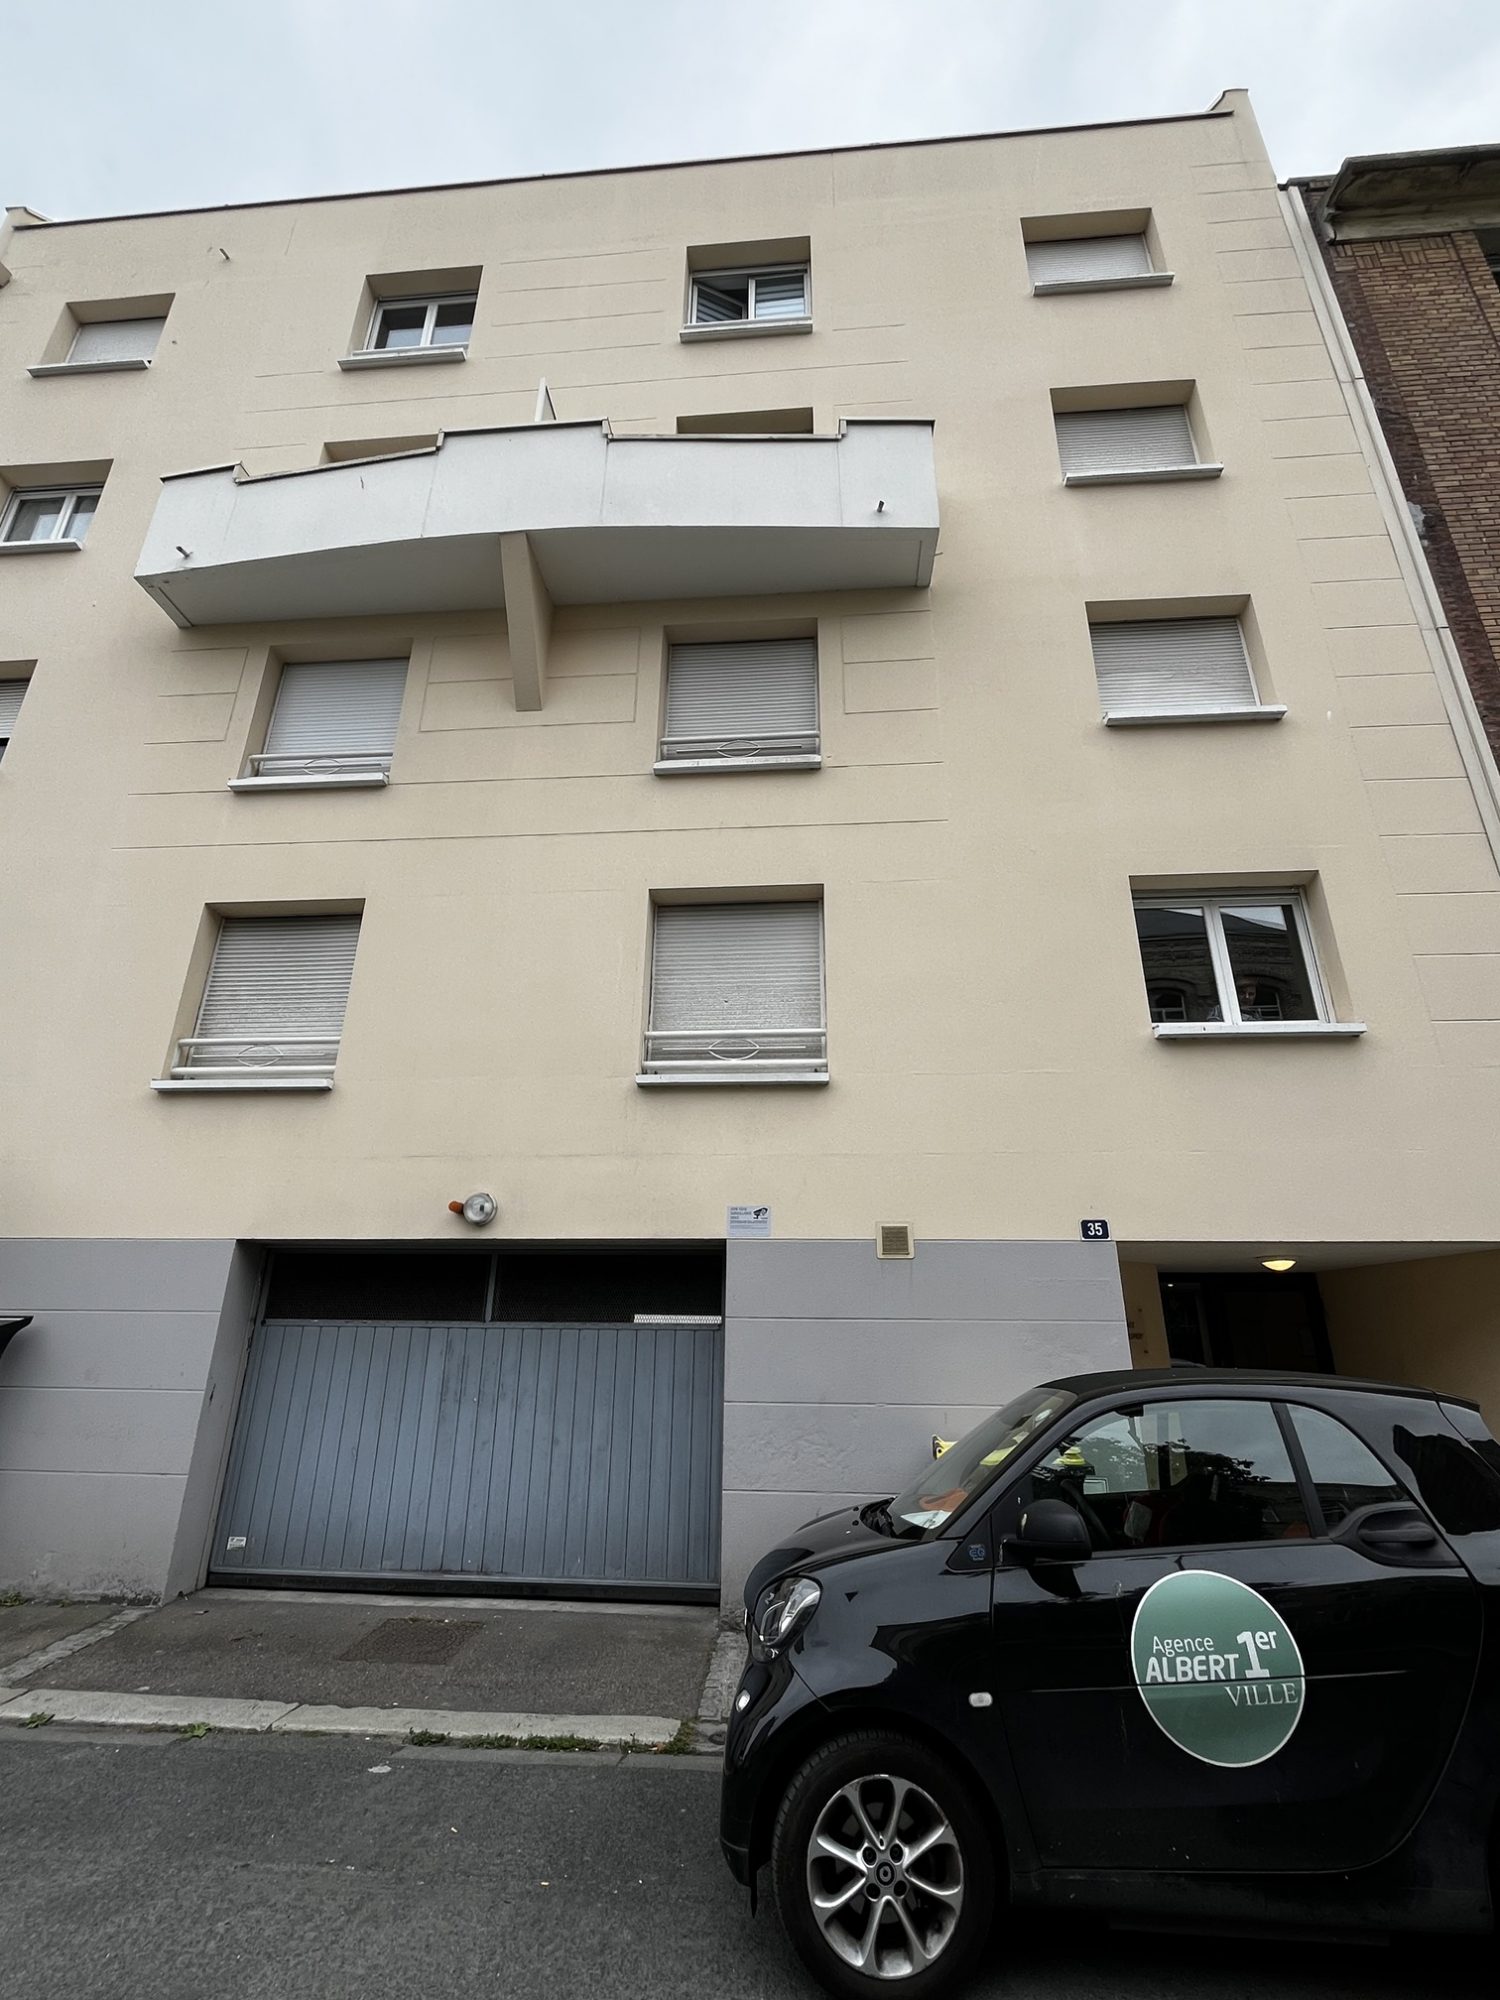 Vente Appartement 20m² 1 Pièce à Le Havre (76600) - Agence Albert 1Er